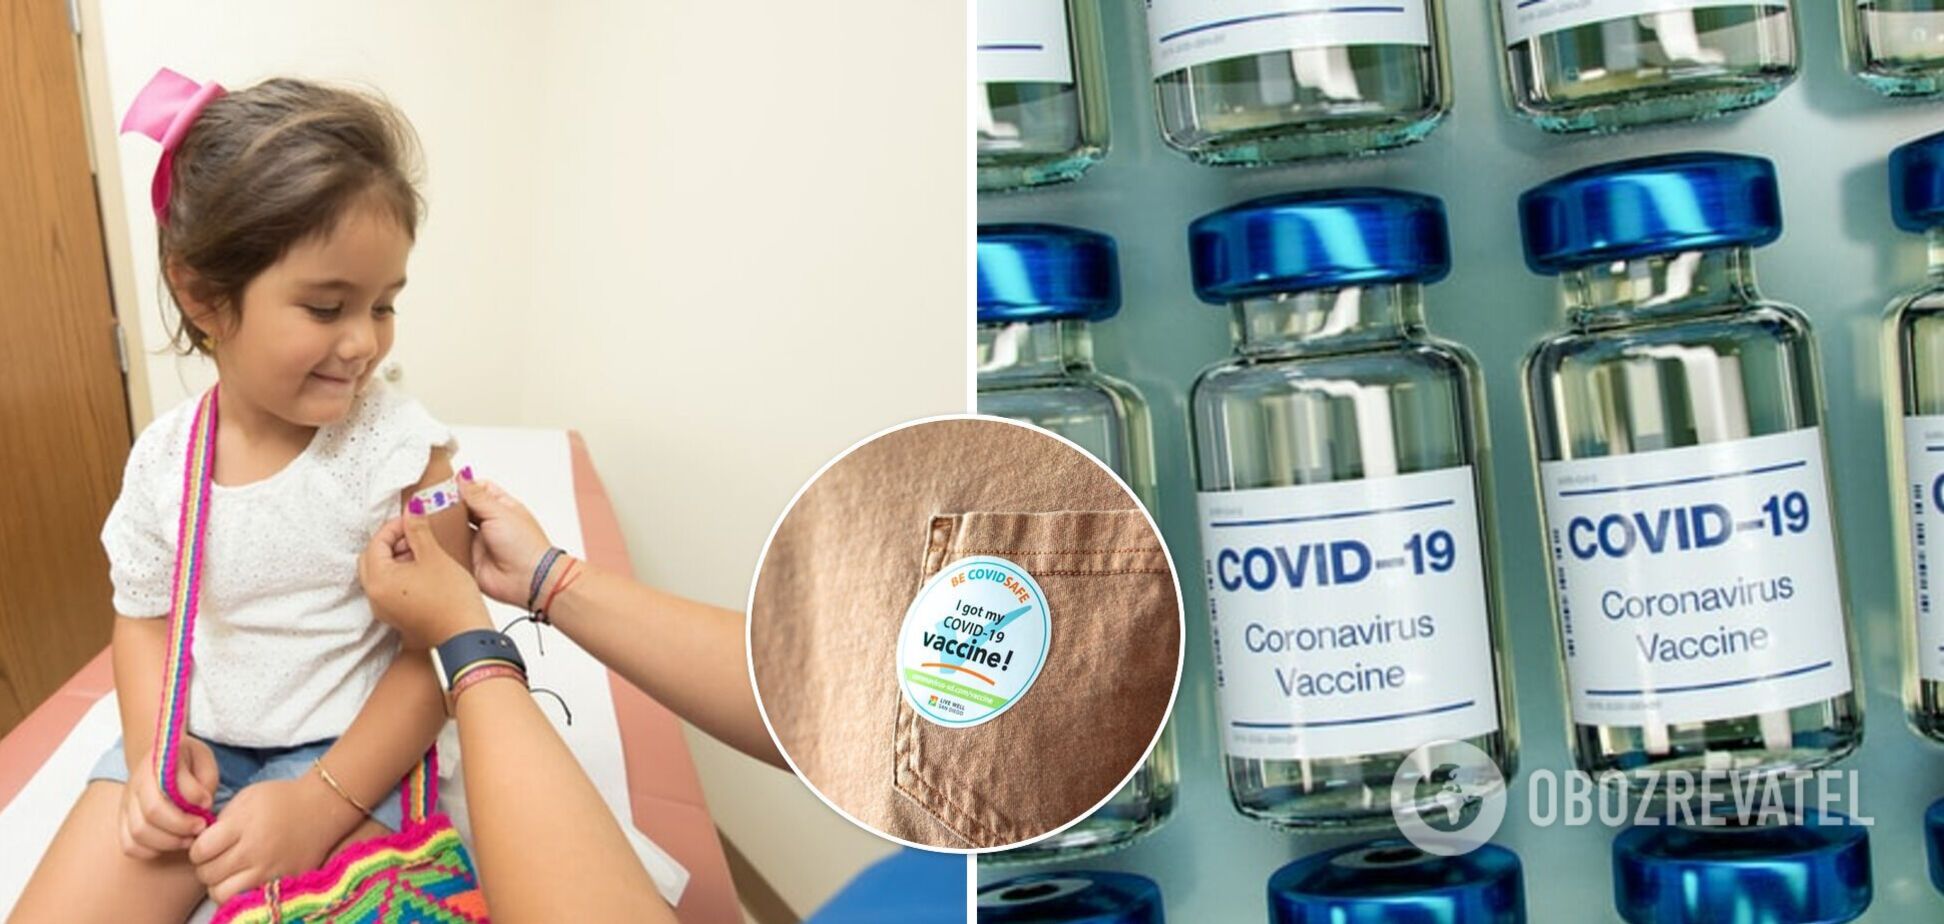 В компании Pfizer /BioNTech разработали вакцину против COVID-19 для детей 5-11 лет